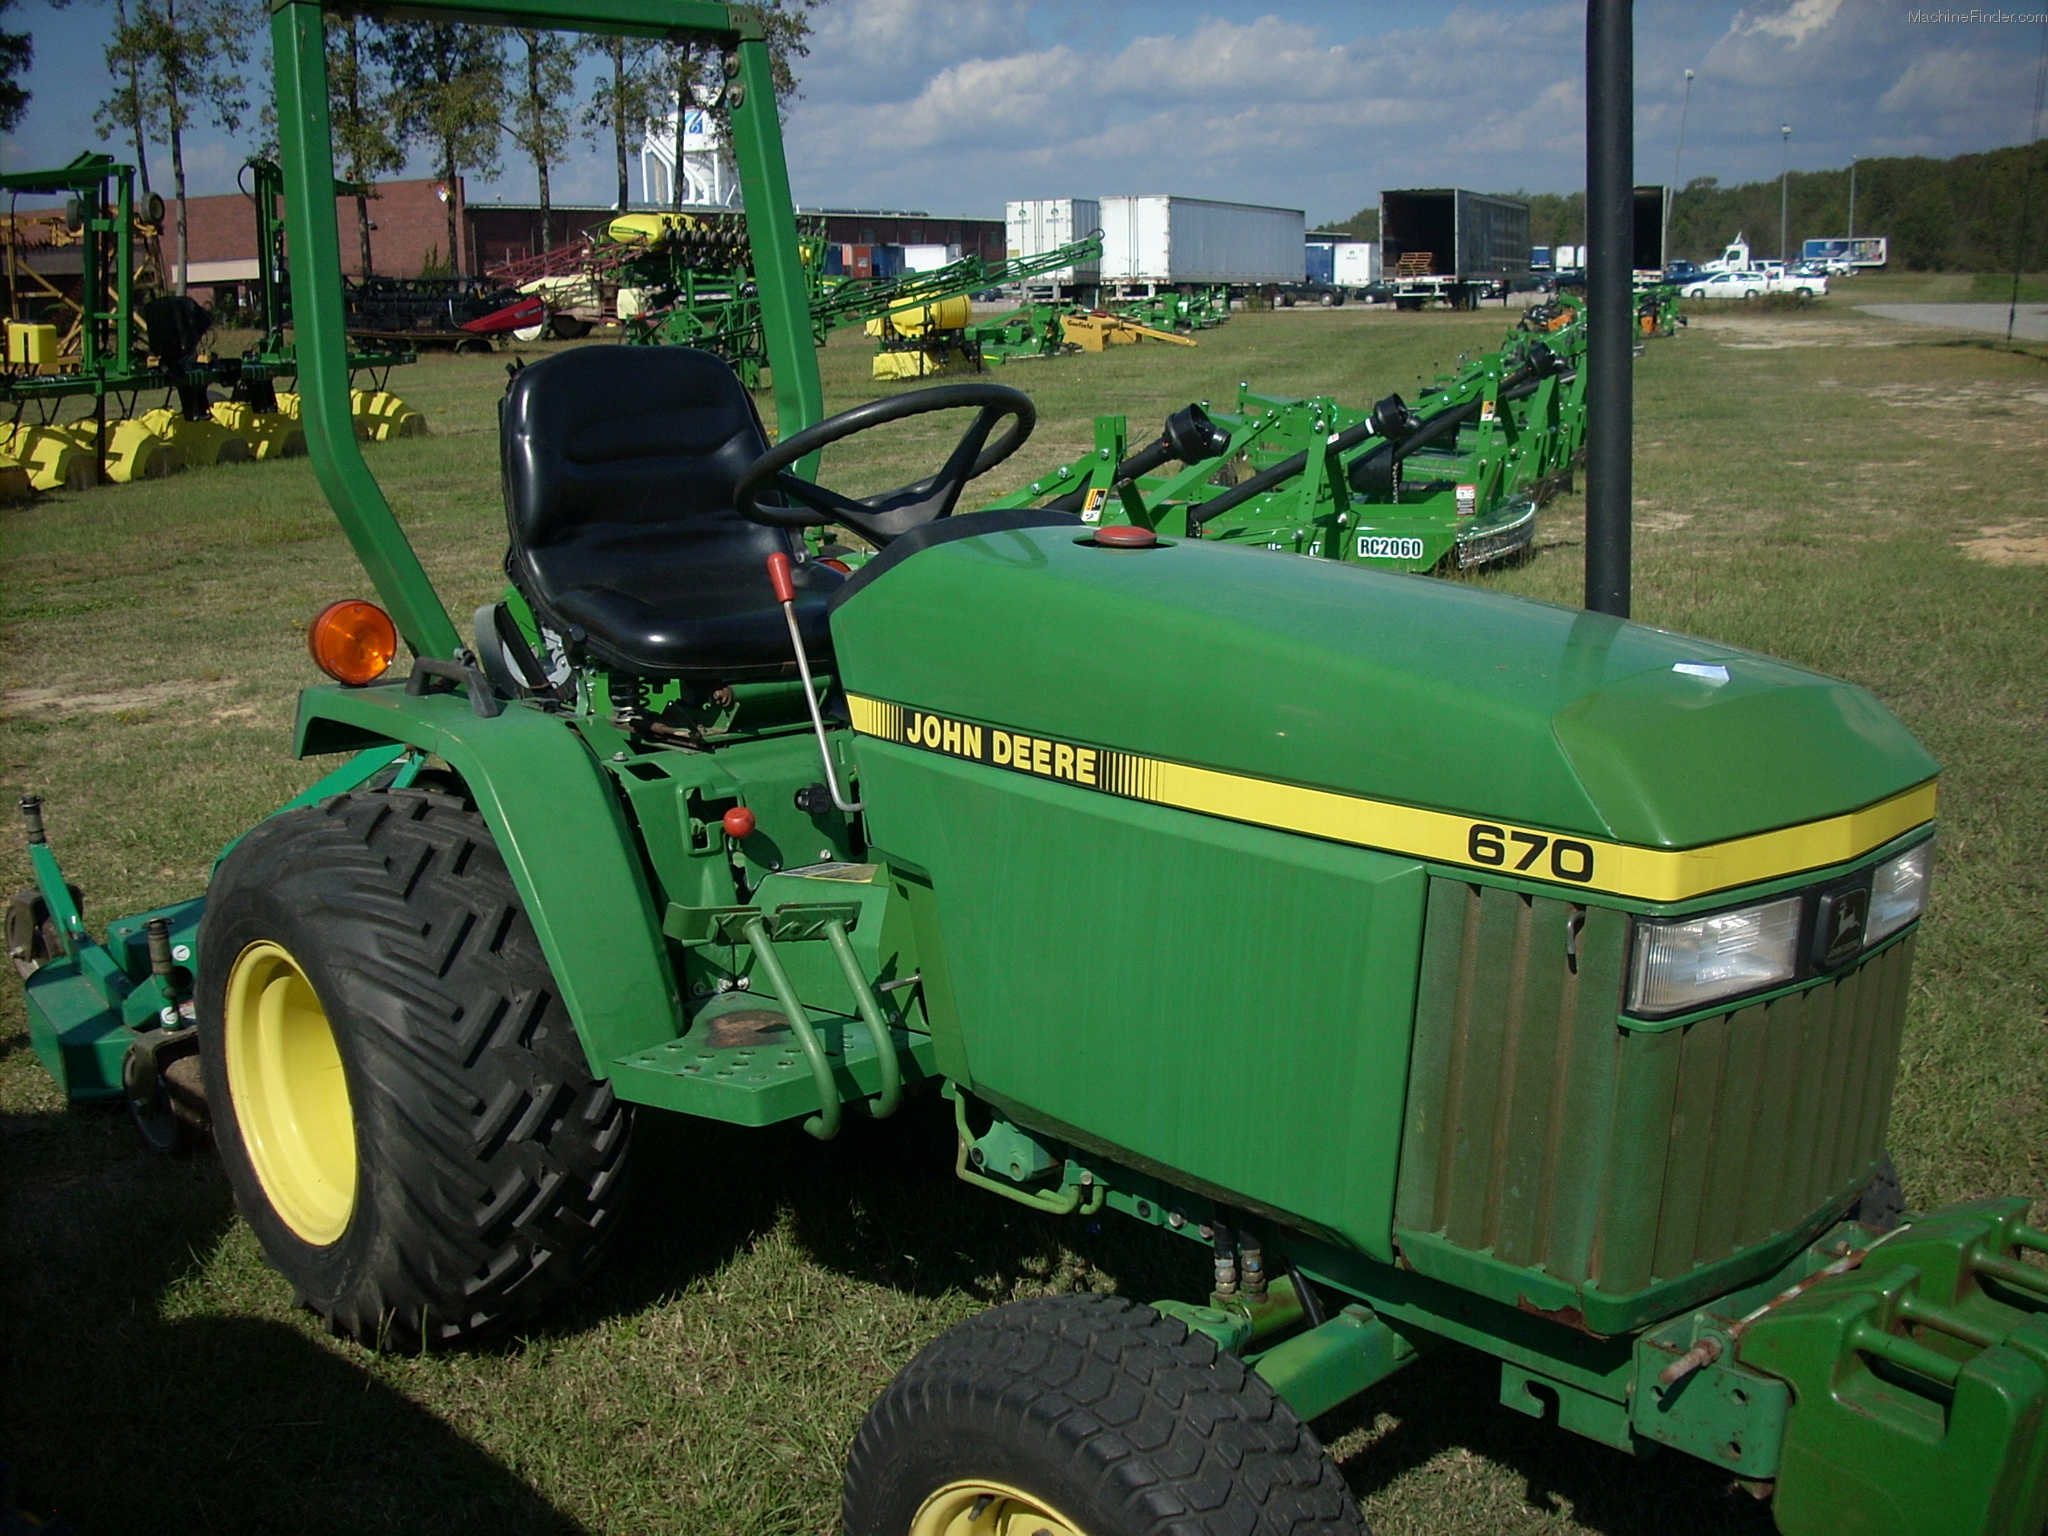 1990 John Deere 670 Tractors - Compact (1-40hp.) - John Deere ...